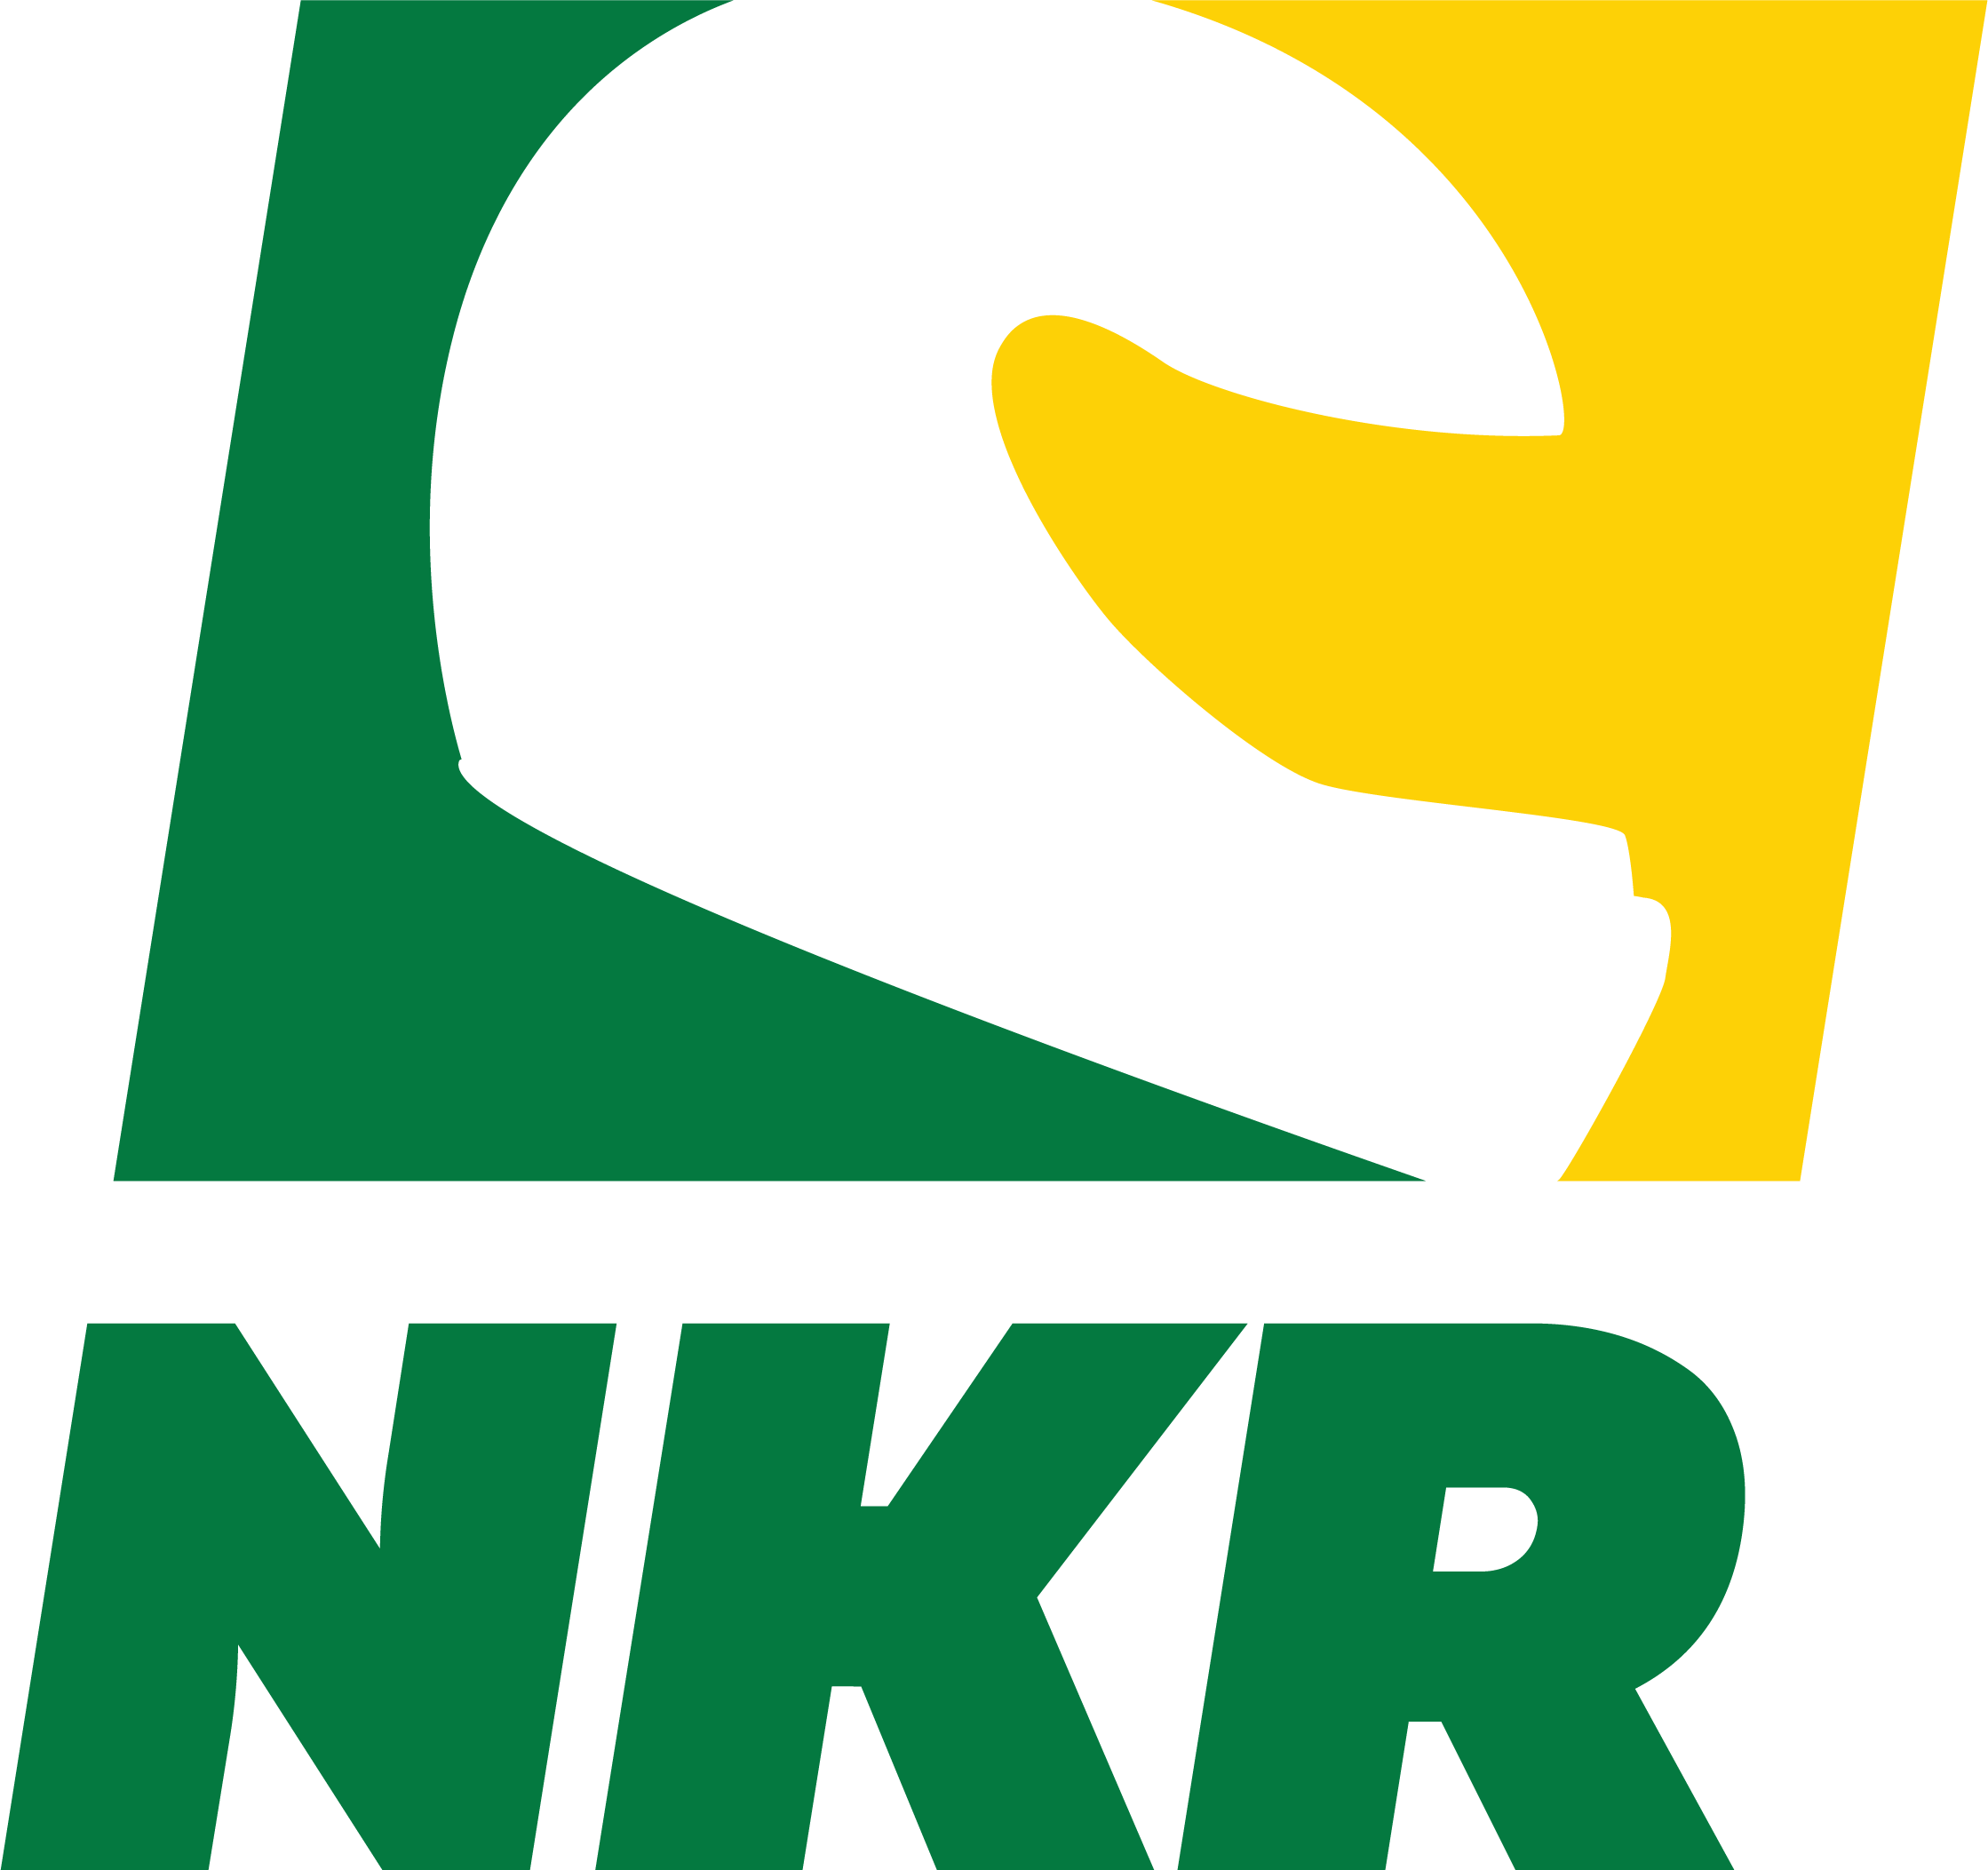 NKR